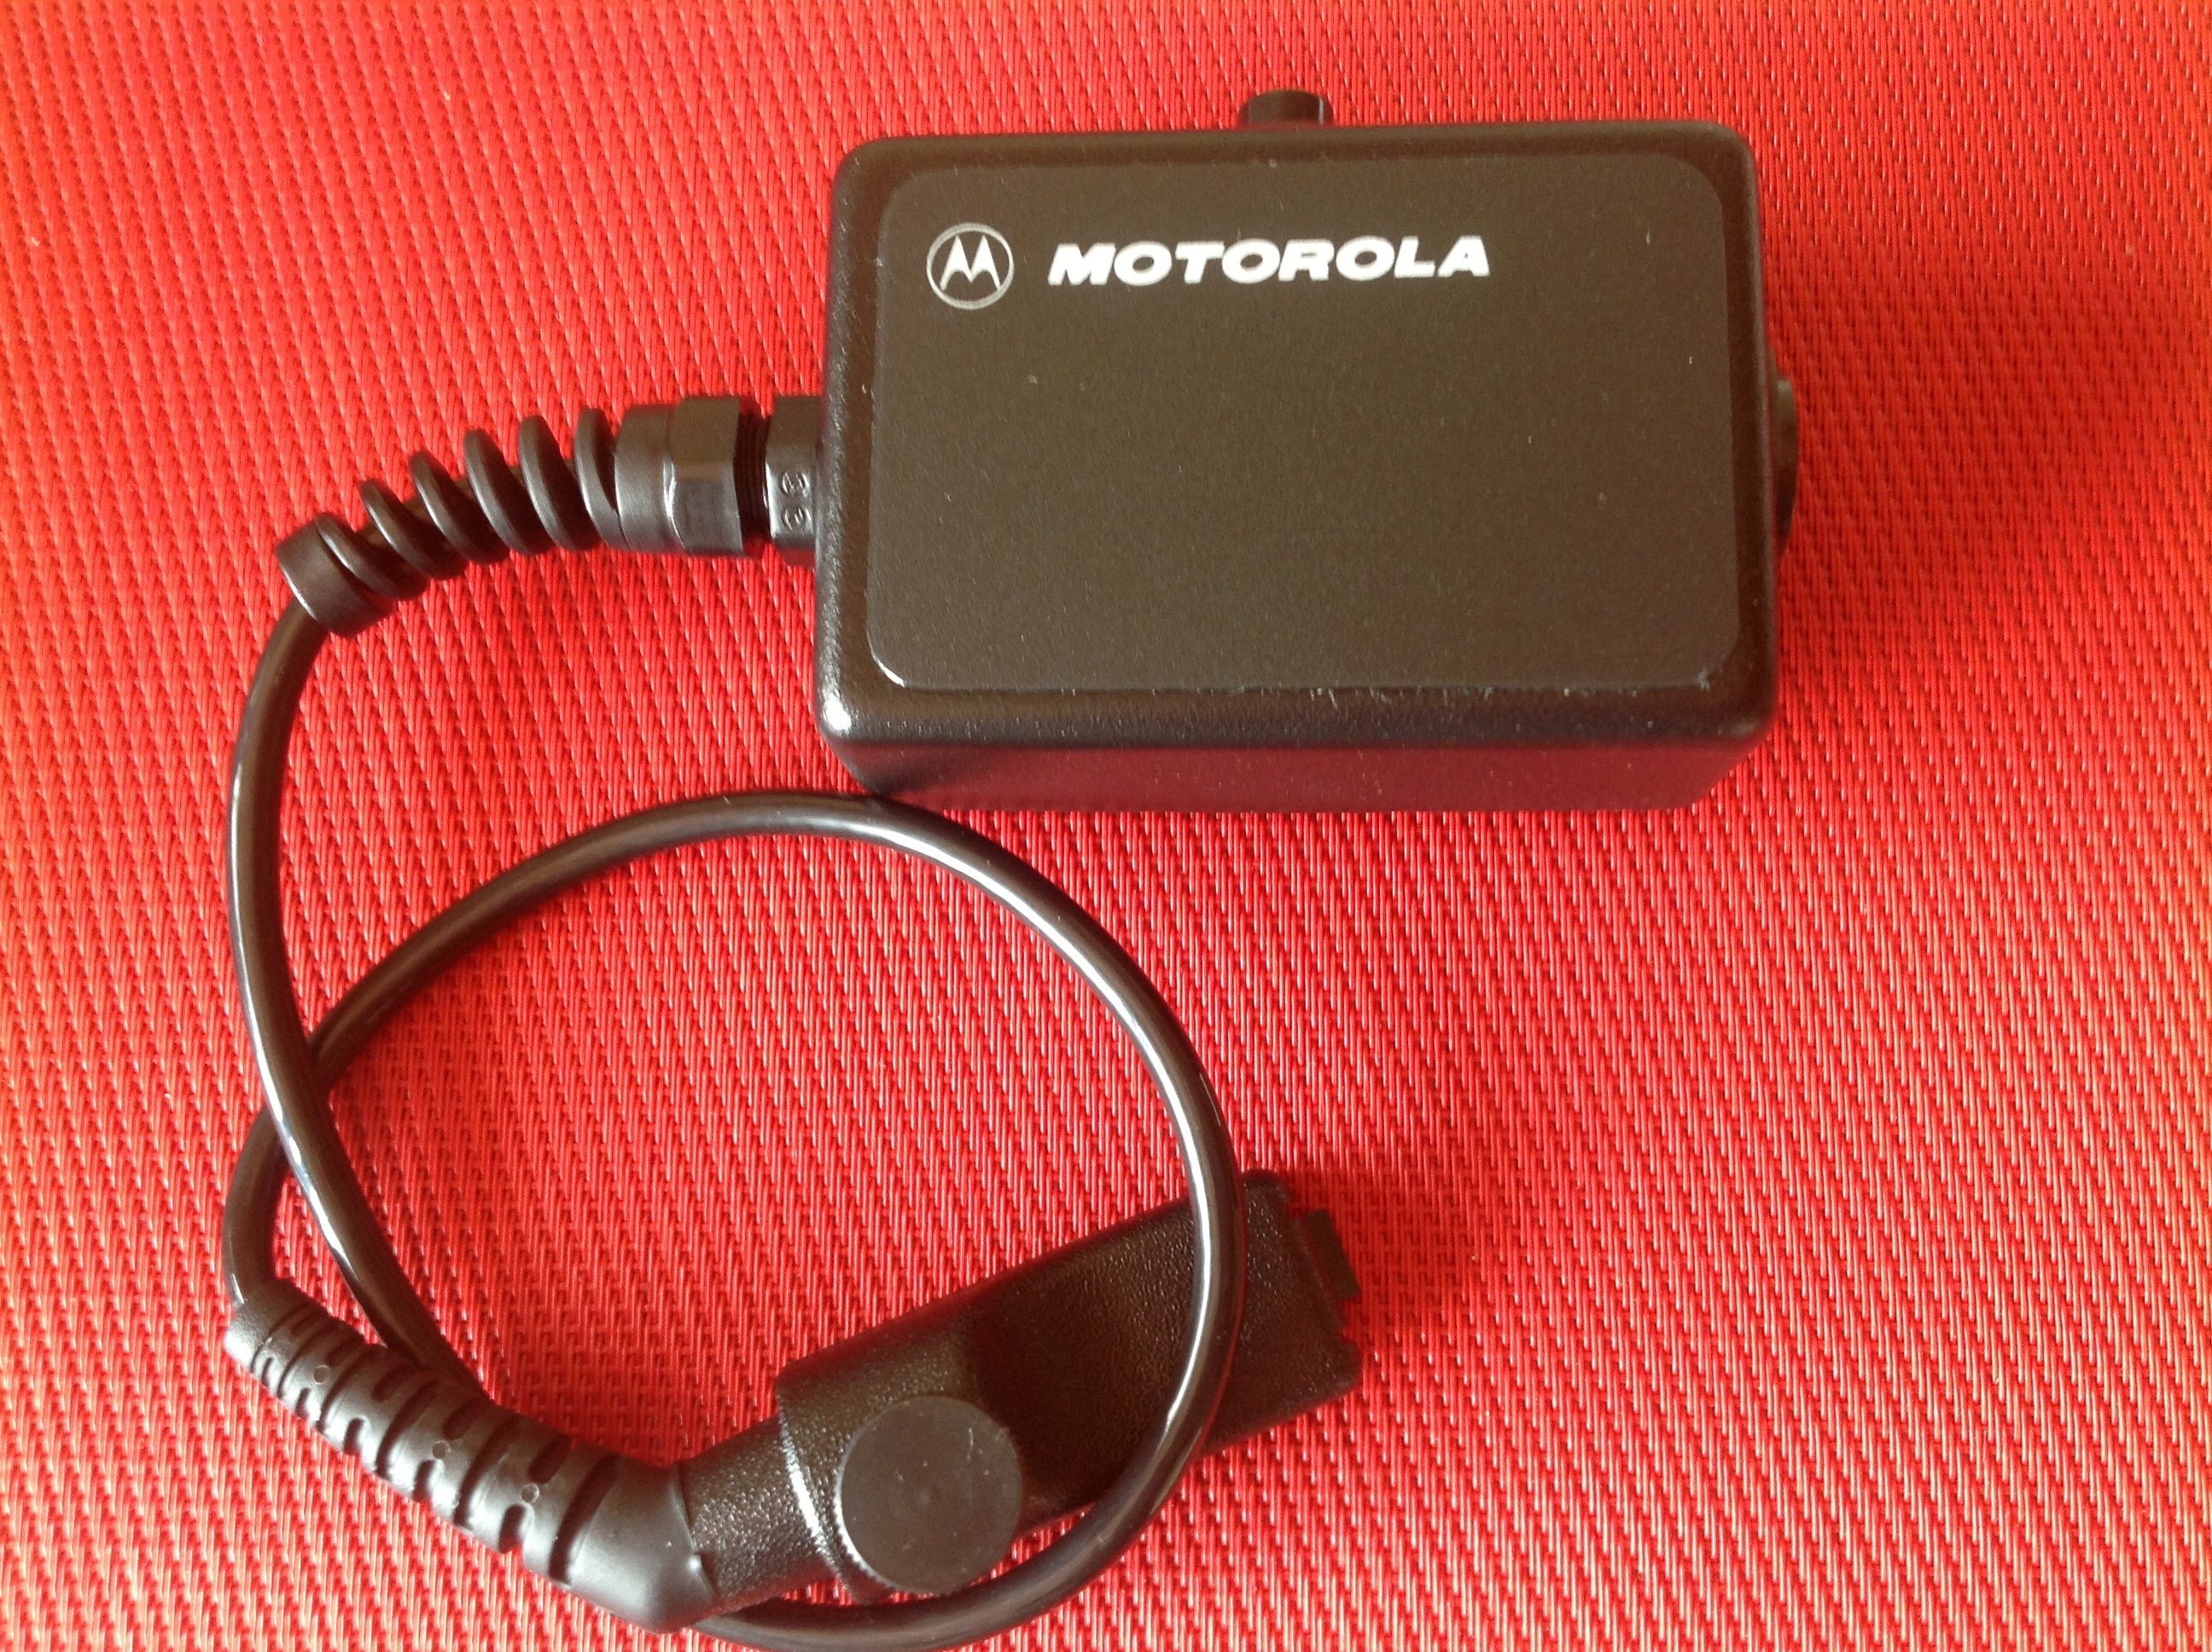 Motorola Headset-Kopfhörer-Adapter Typ NTN5714A